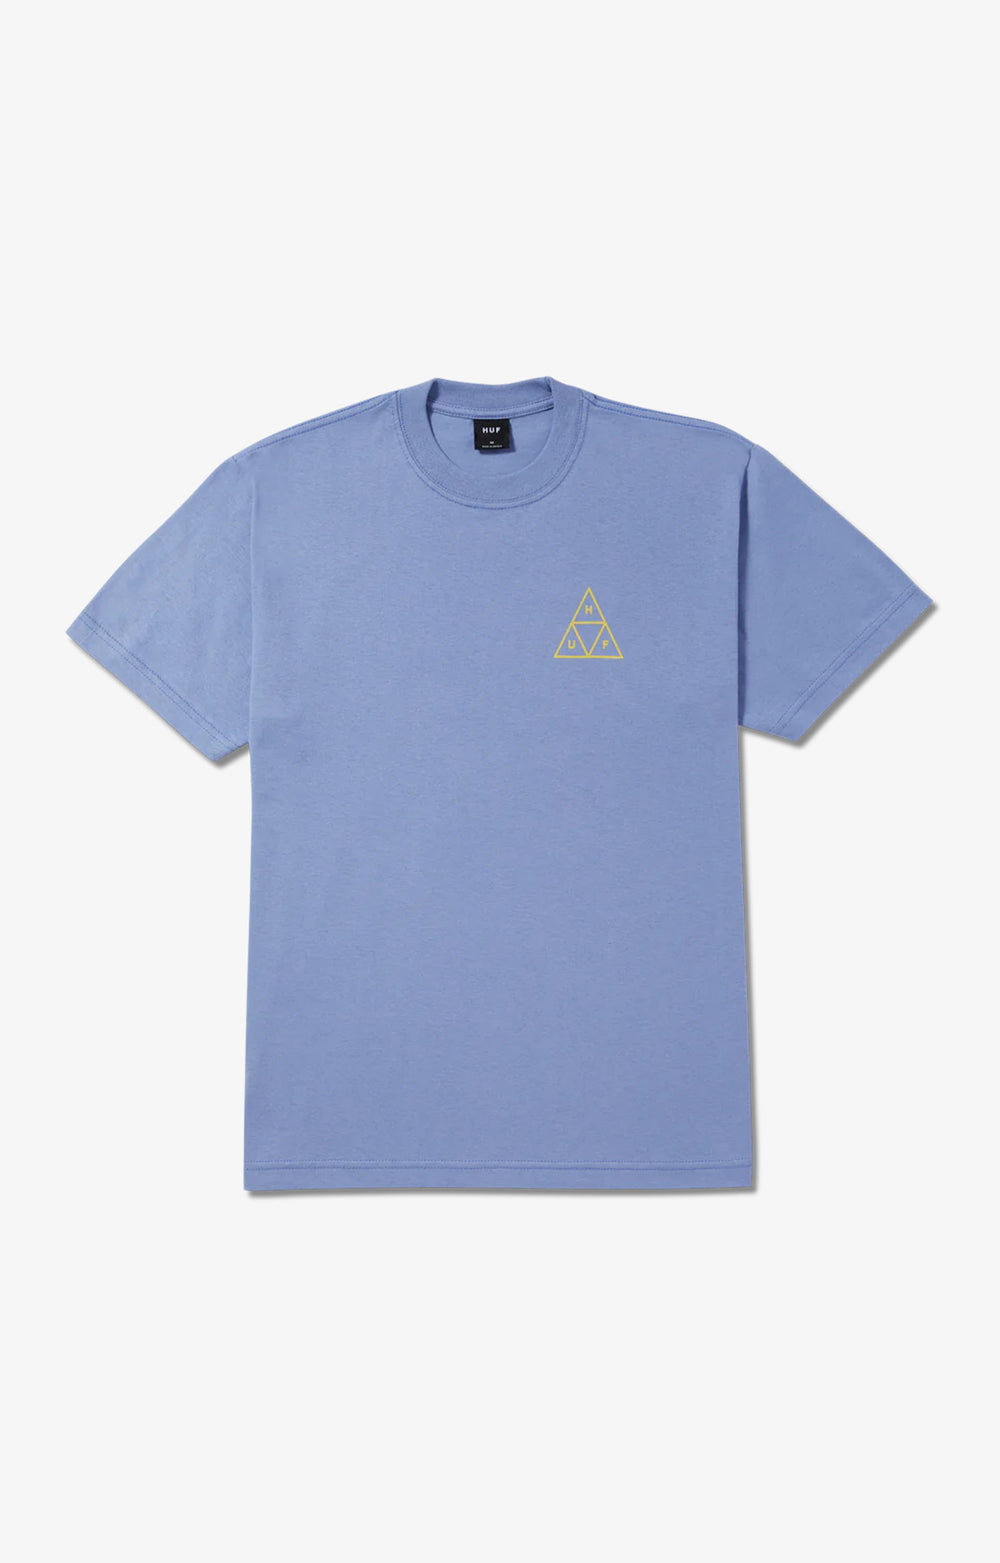 HUF Set TT T-Shirt, Vintage Violet